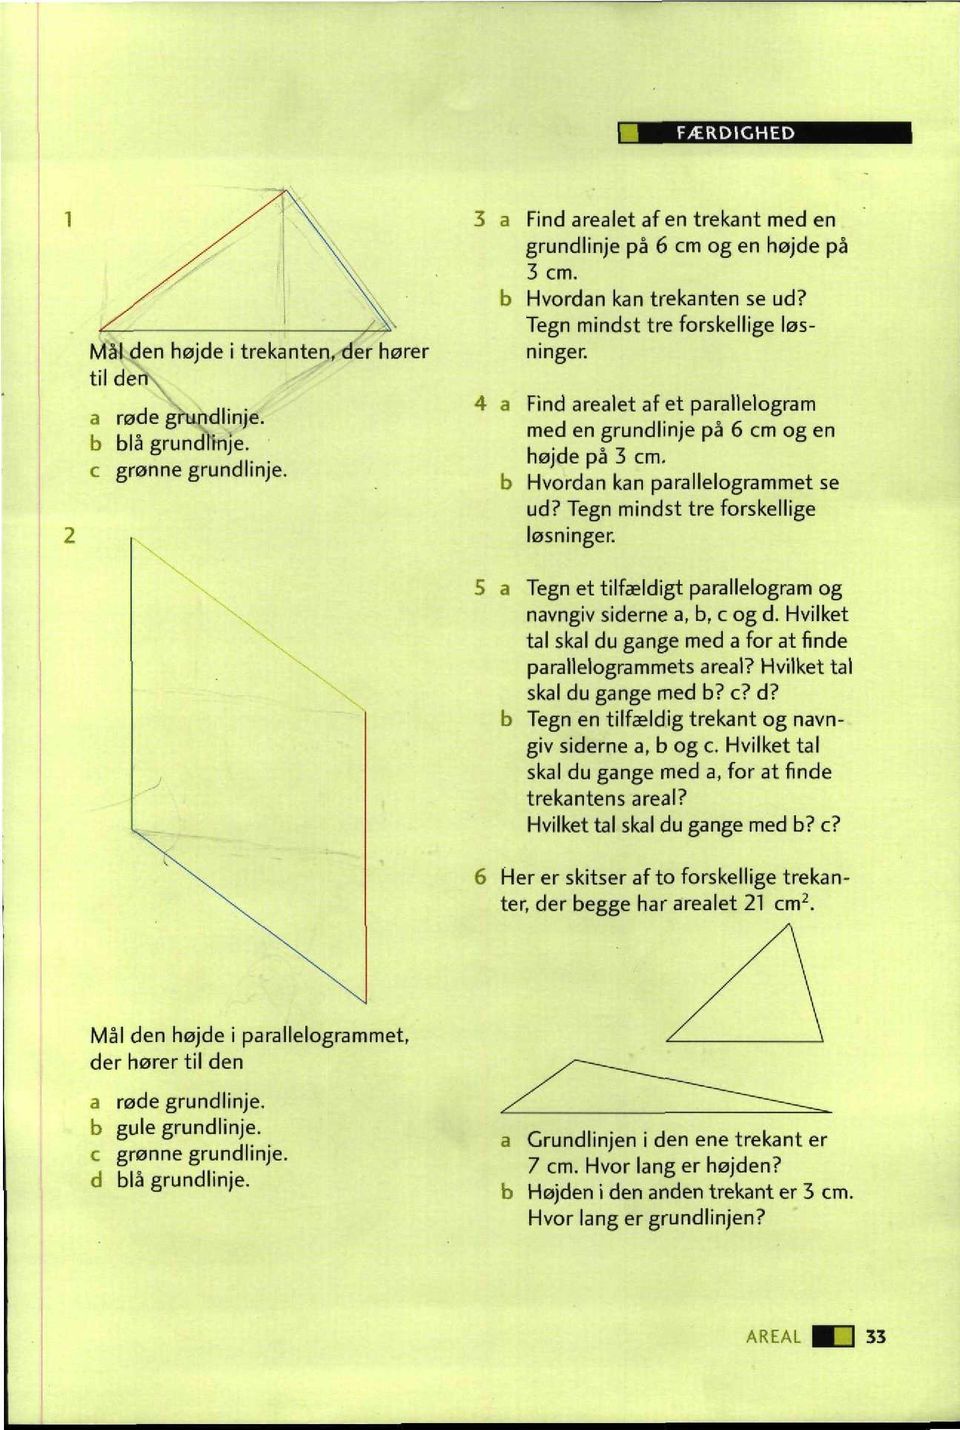 Find arealet af et parallelogram med en grundlinje på 6 cm og en højde på 3 cm. Hvordan kan parallelogrammet se ud? Tegn mindst tre forskellige løsninger. \.